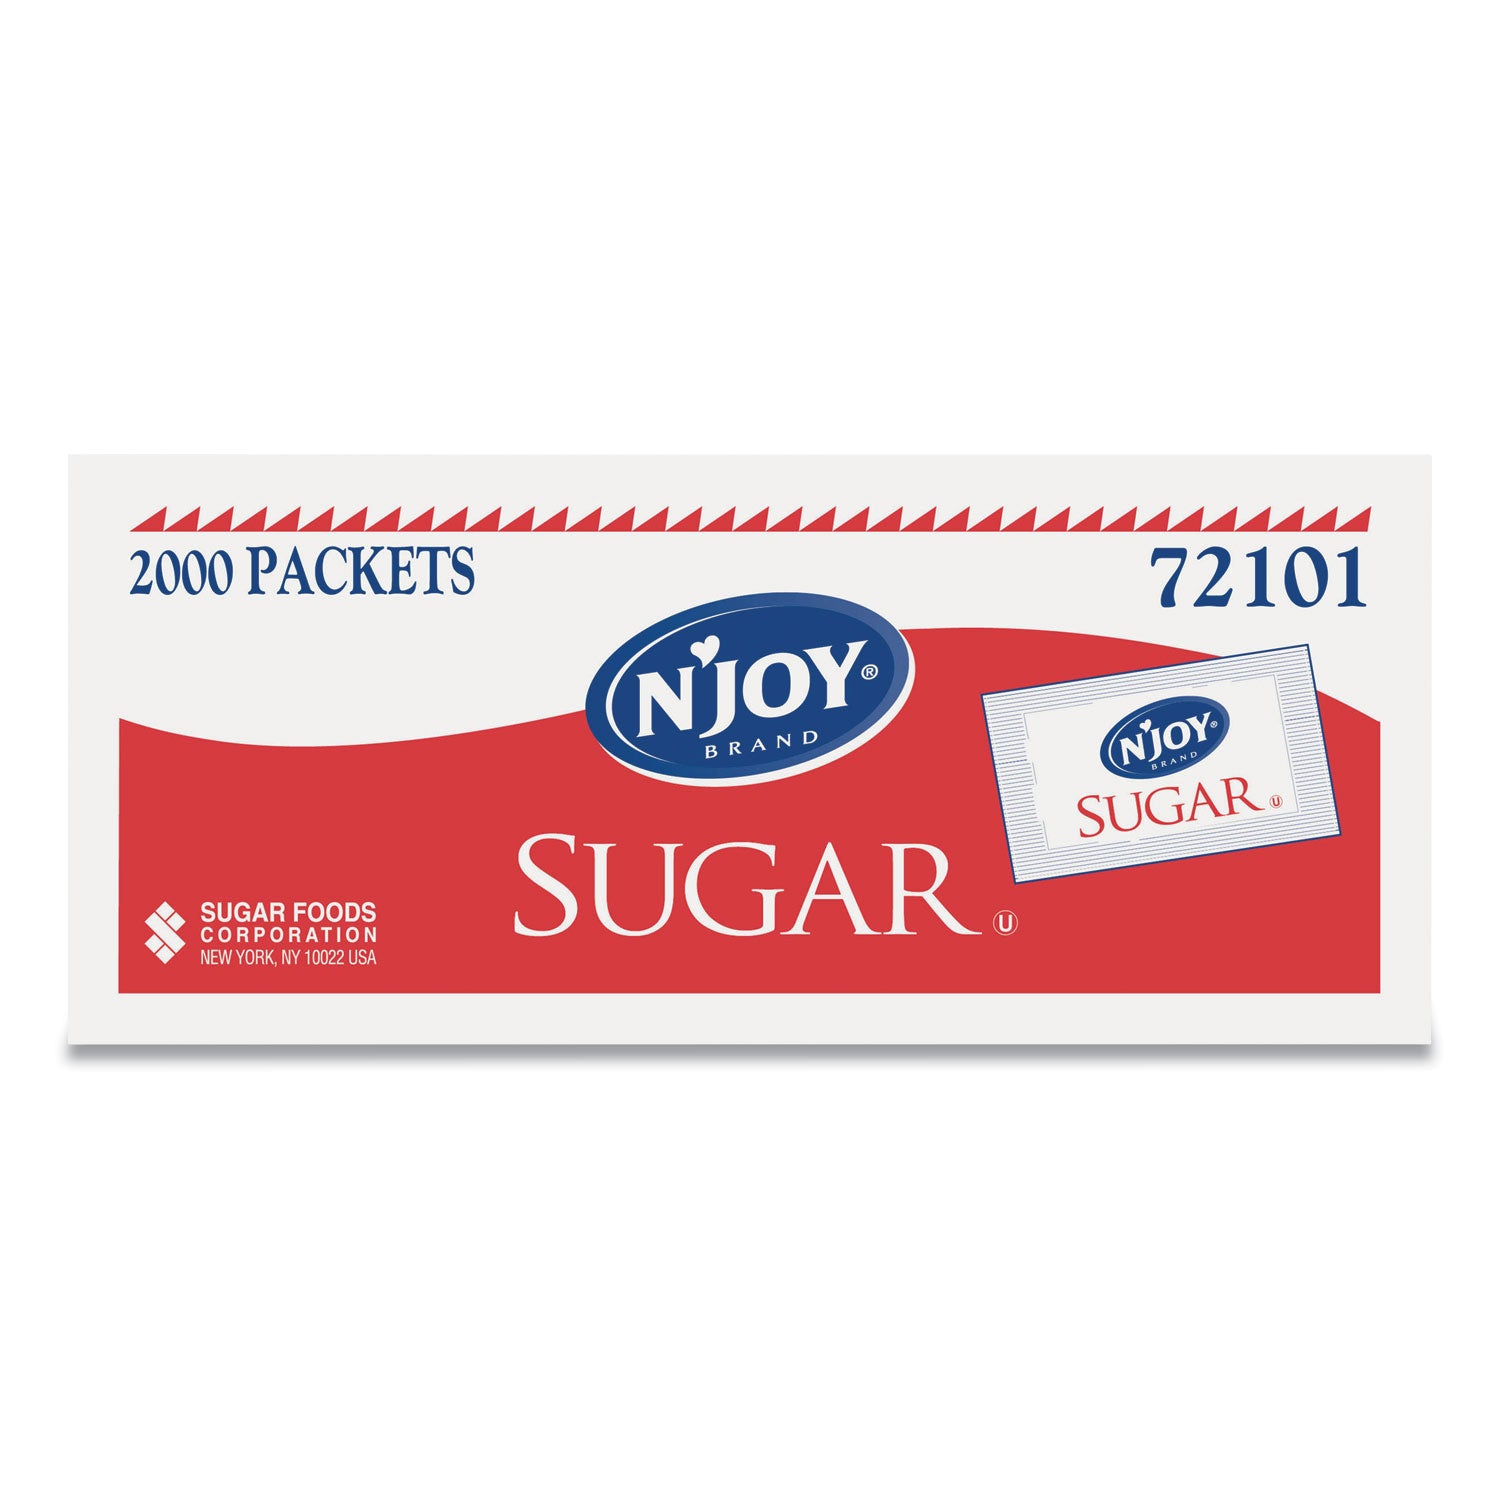 sugar-packets-01-oz-2000-packets-box_njosug72101 - 1